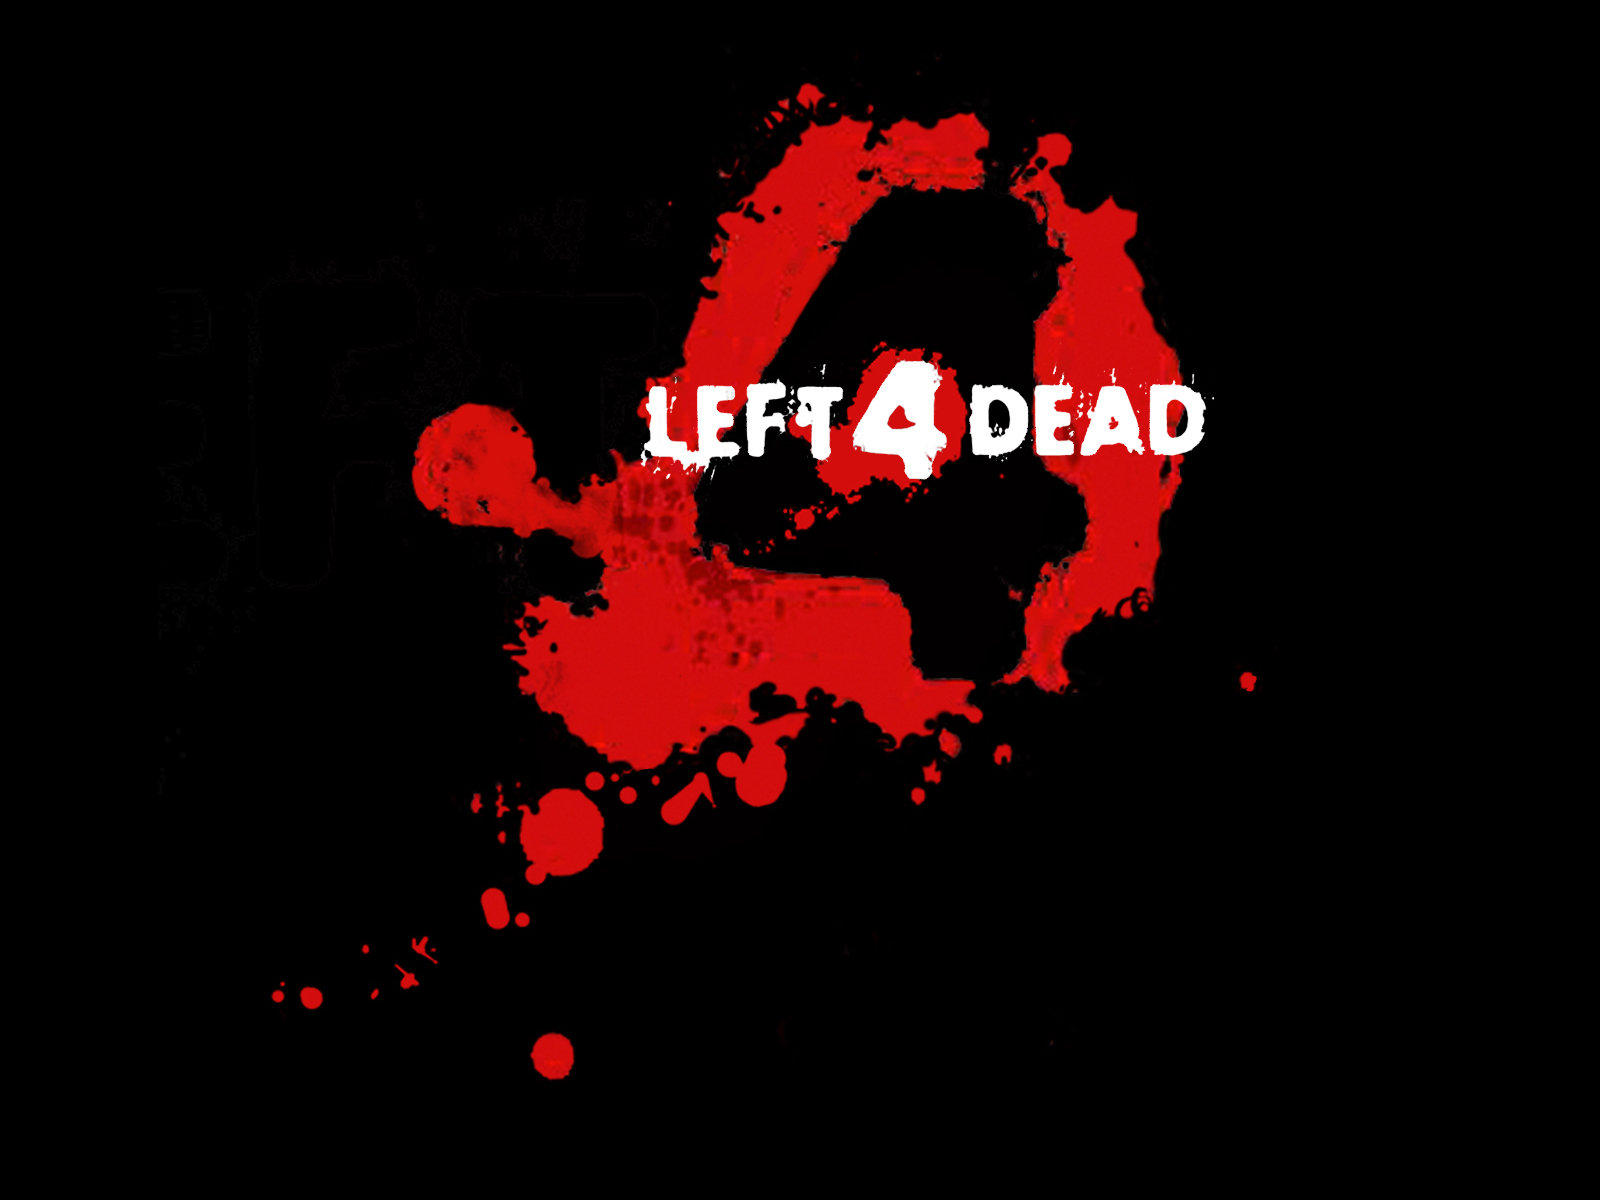 Best Left 4 Dead  (L4D) wallpaper ID:450558 for High Resolution hd 1600x1200 desktop